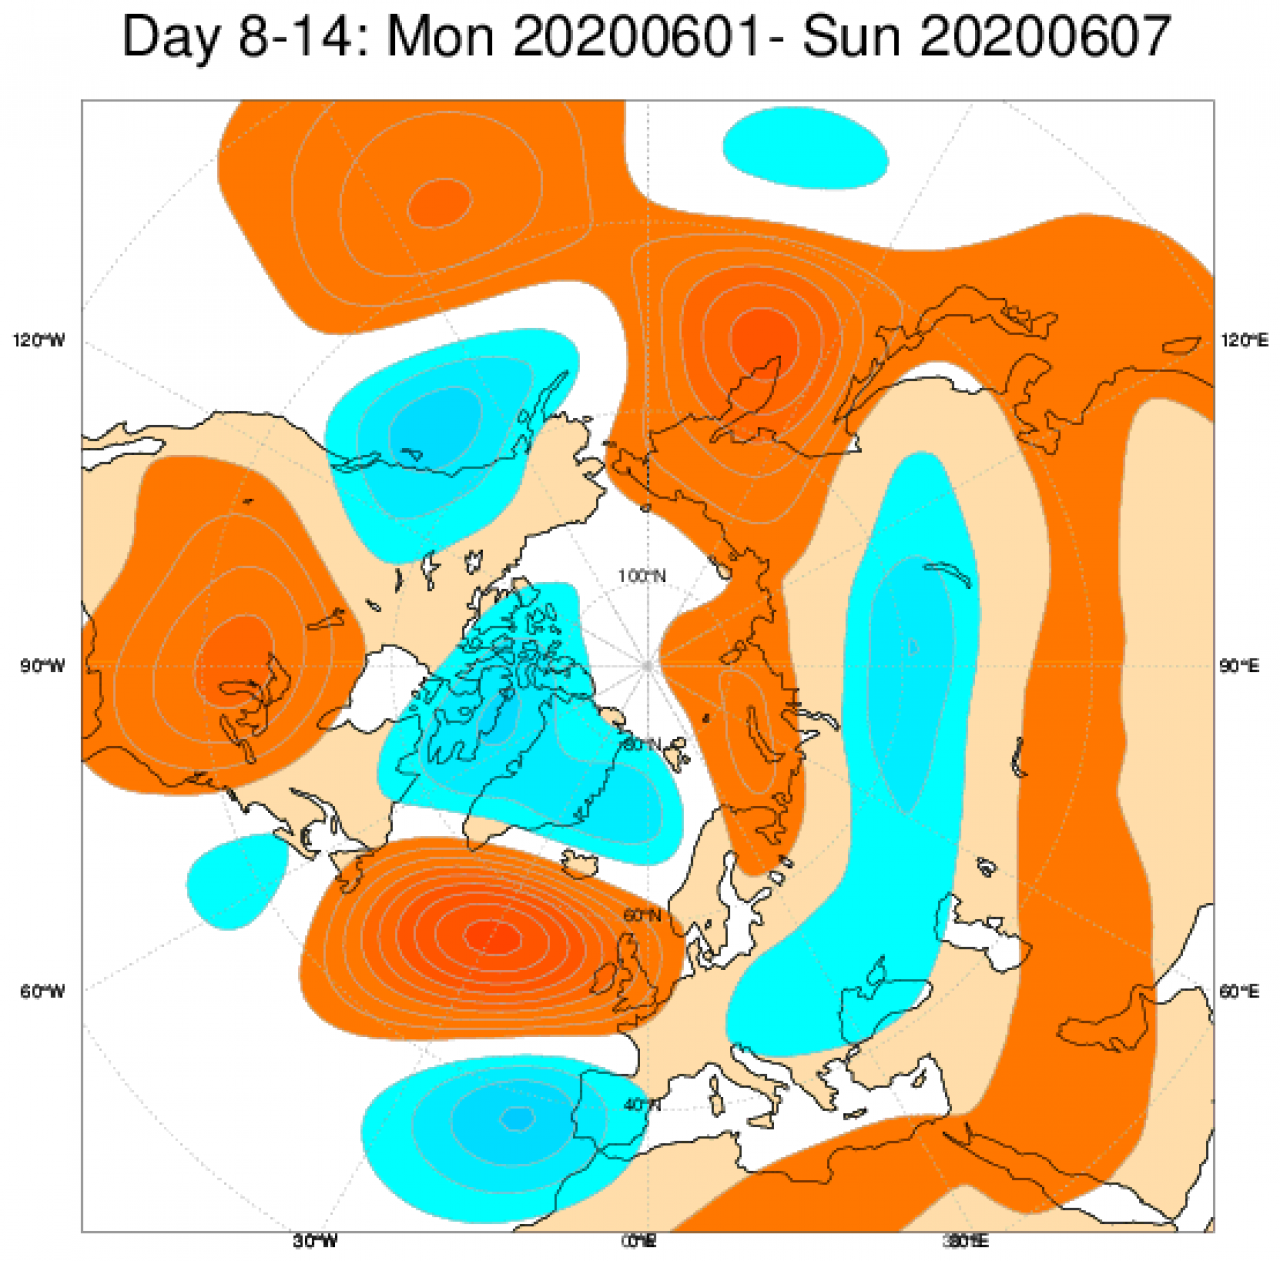 Le anomalie di geopotenziale a 500hPa secondo il modello ECMWF mediate nel periodo 1-7 giugno